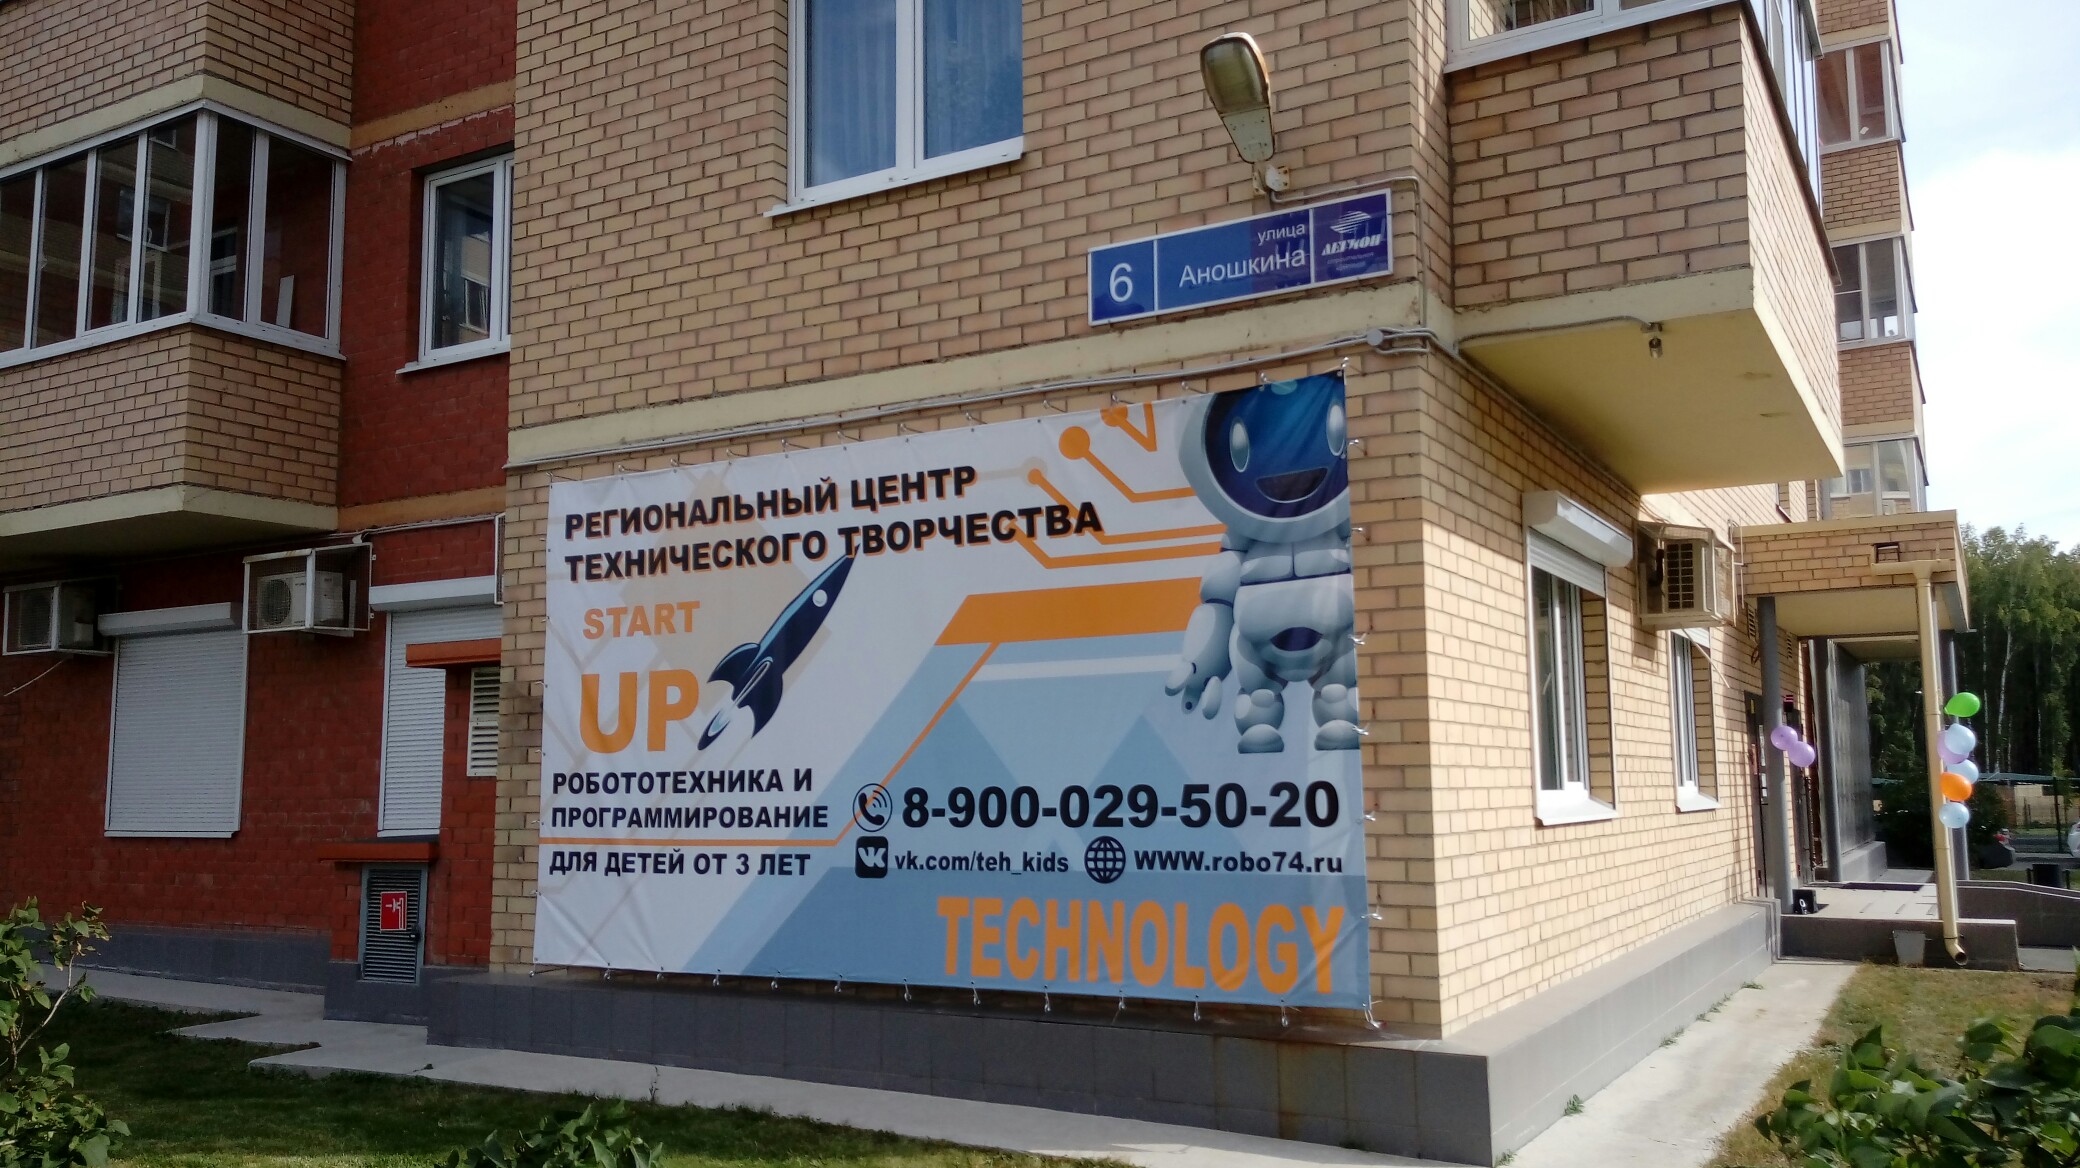 Для школьников и дошколят! На северо-западе Челябинска открылся филиал регионального центра технического творчества